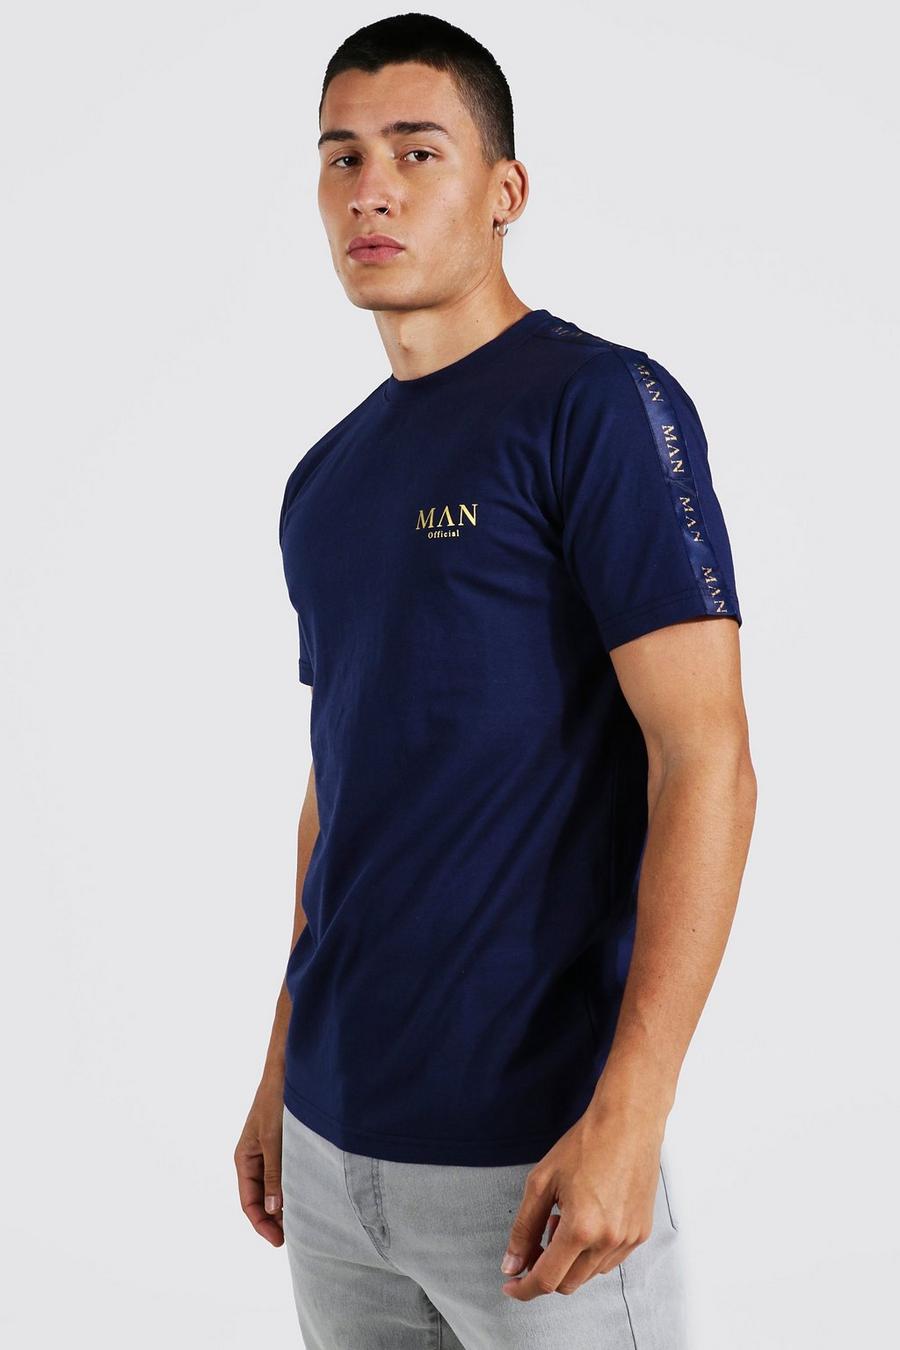 Man Gold T-Shirt mit Streifen, Navy marineblau image number 1